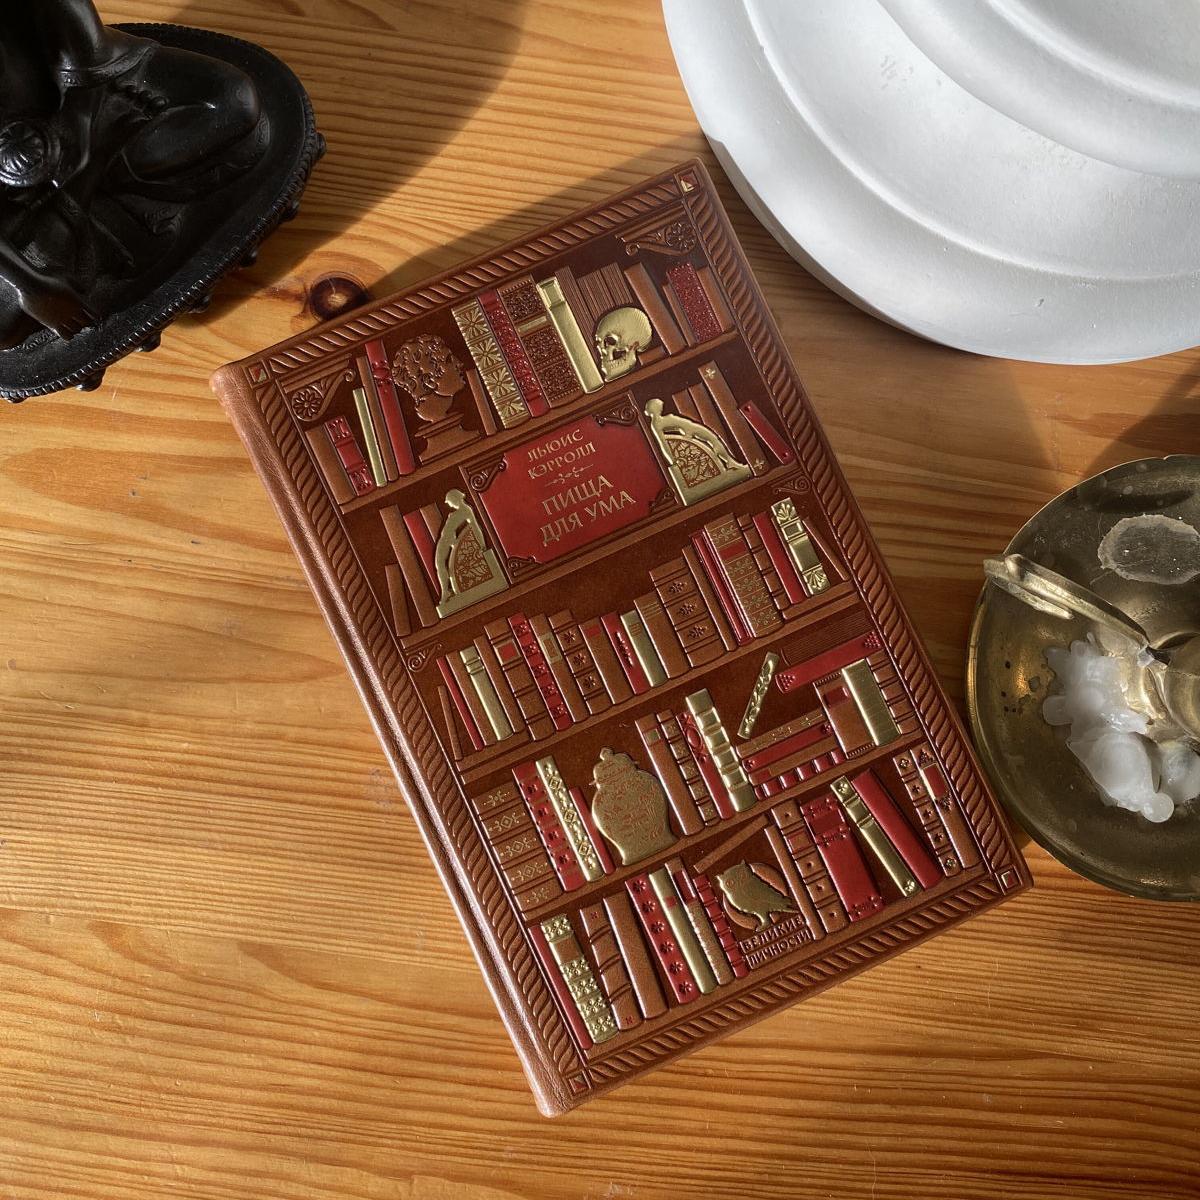 Кожа, золото и шелк: «Офистон Маркет» предлагает коллекционные книги премиум-класса